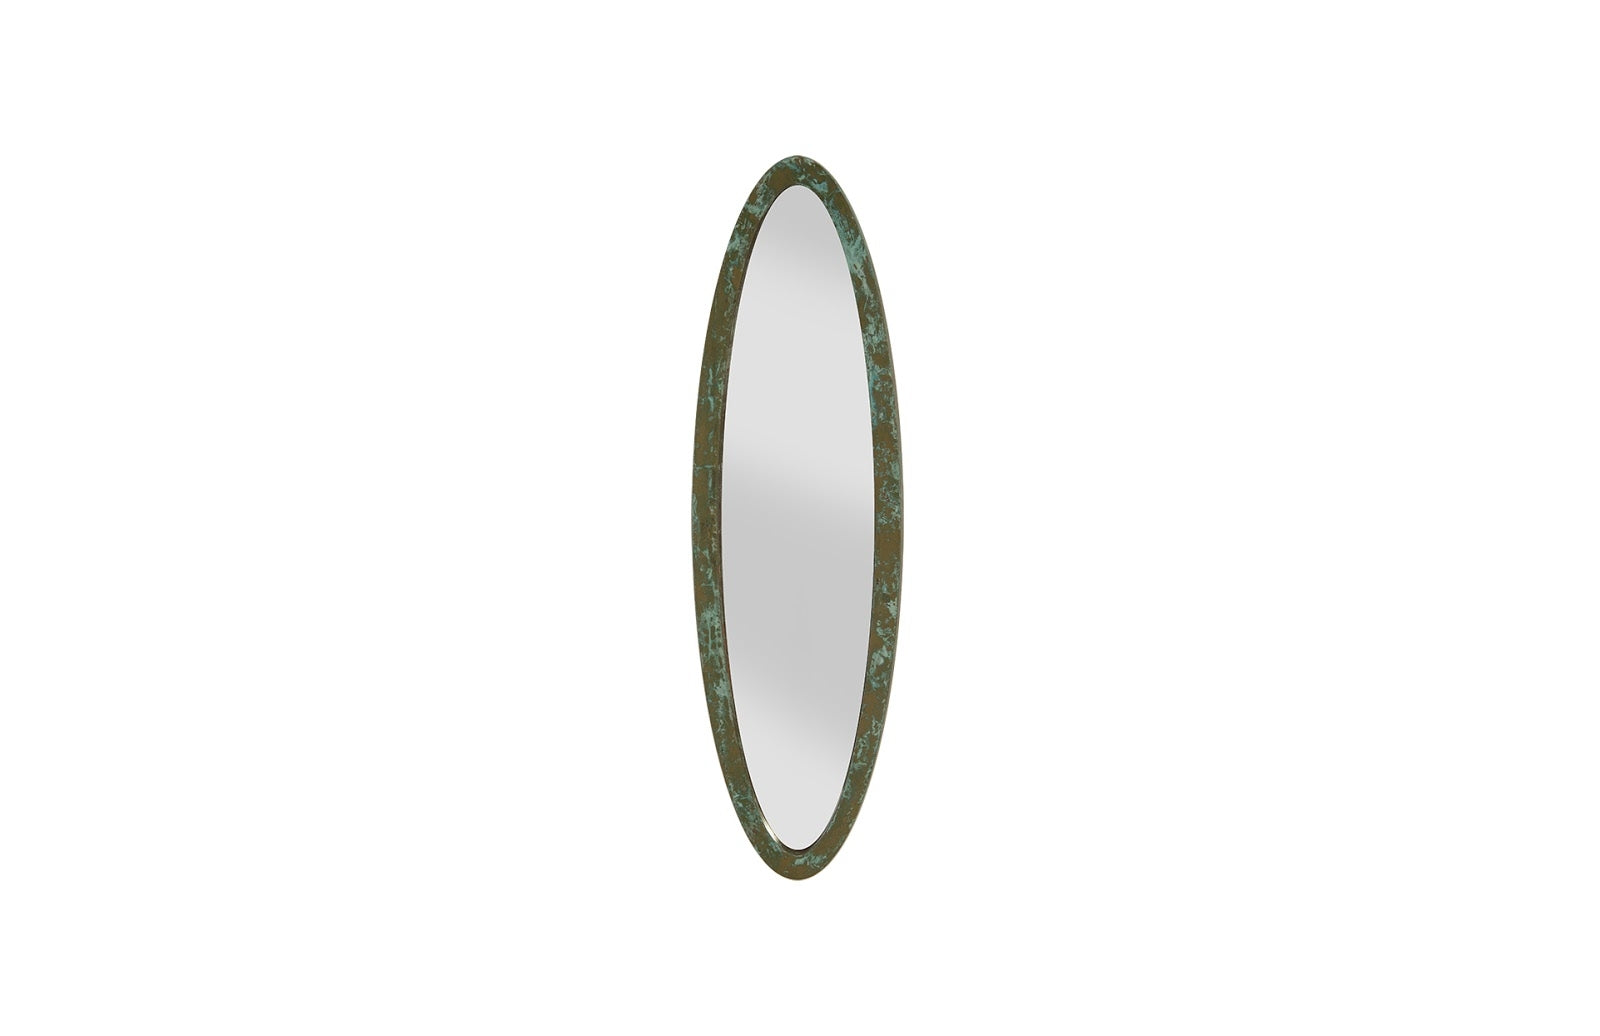 Elliptical Oval Mirror Small, Lichen